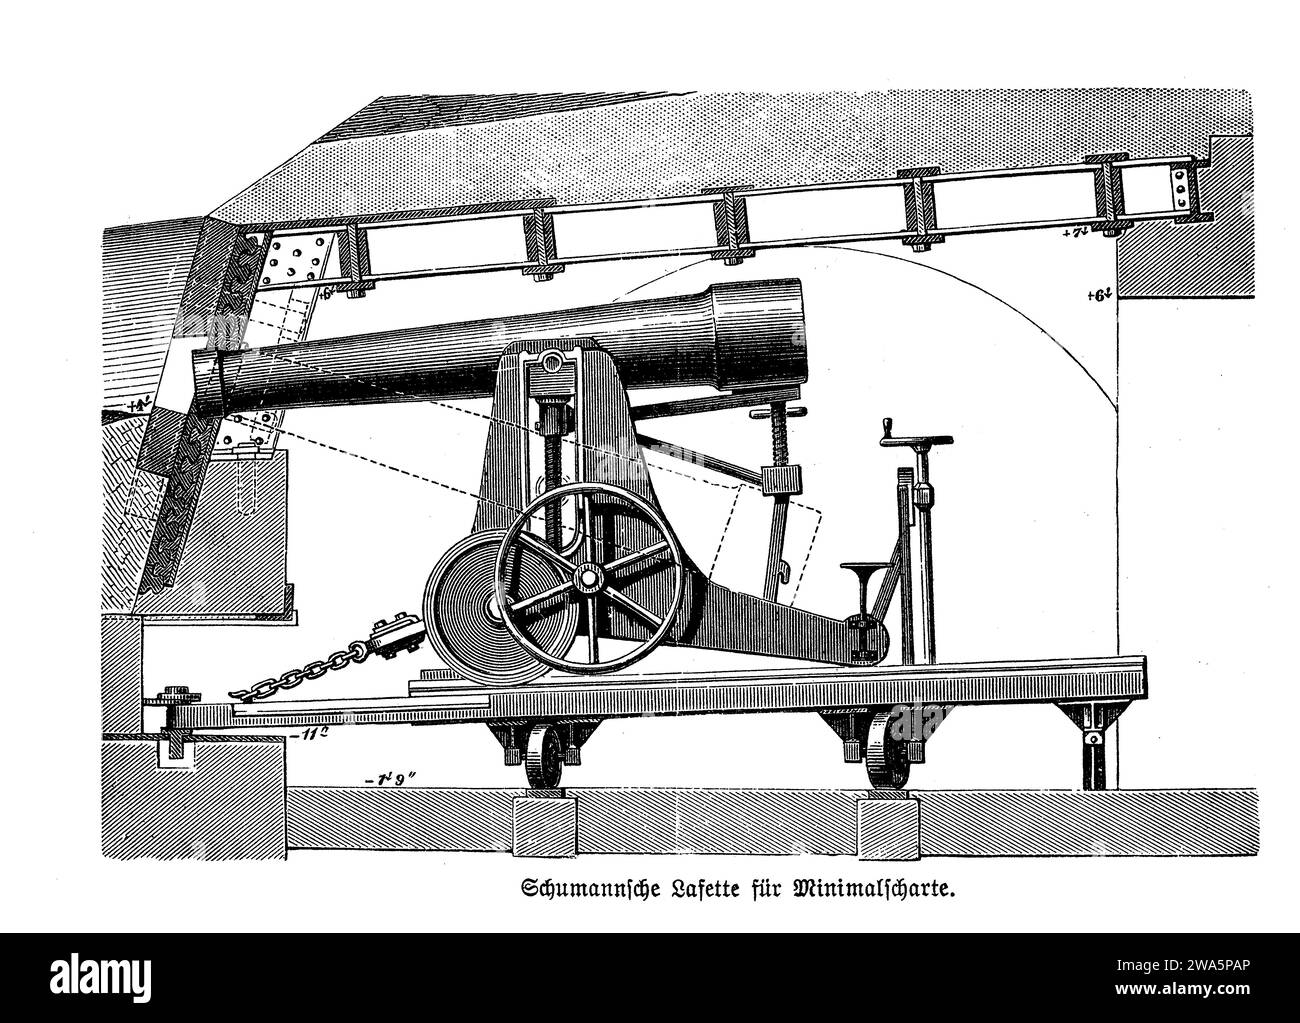 Schumanns montierte Waffe für minimales Schlupfloch in Verteidigungstürmen oder Bunkern, 19. Jahrhundert Stockfoto